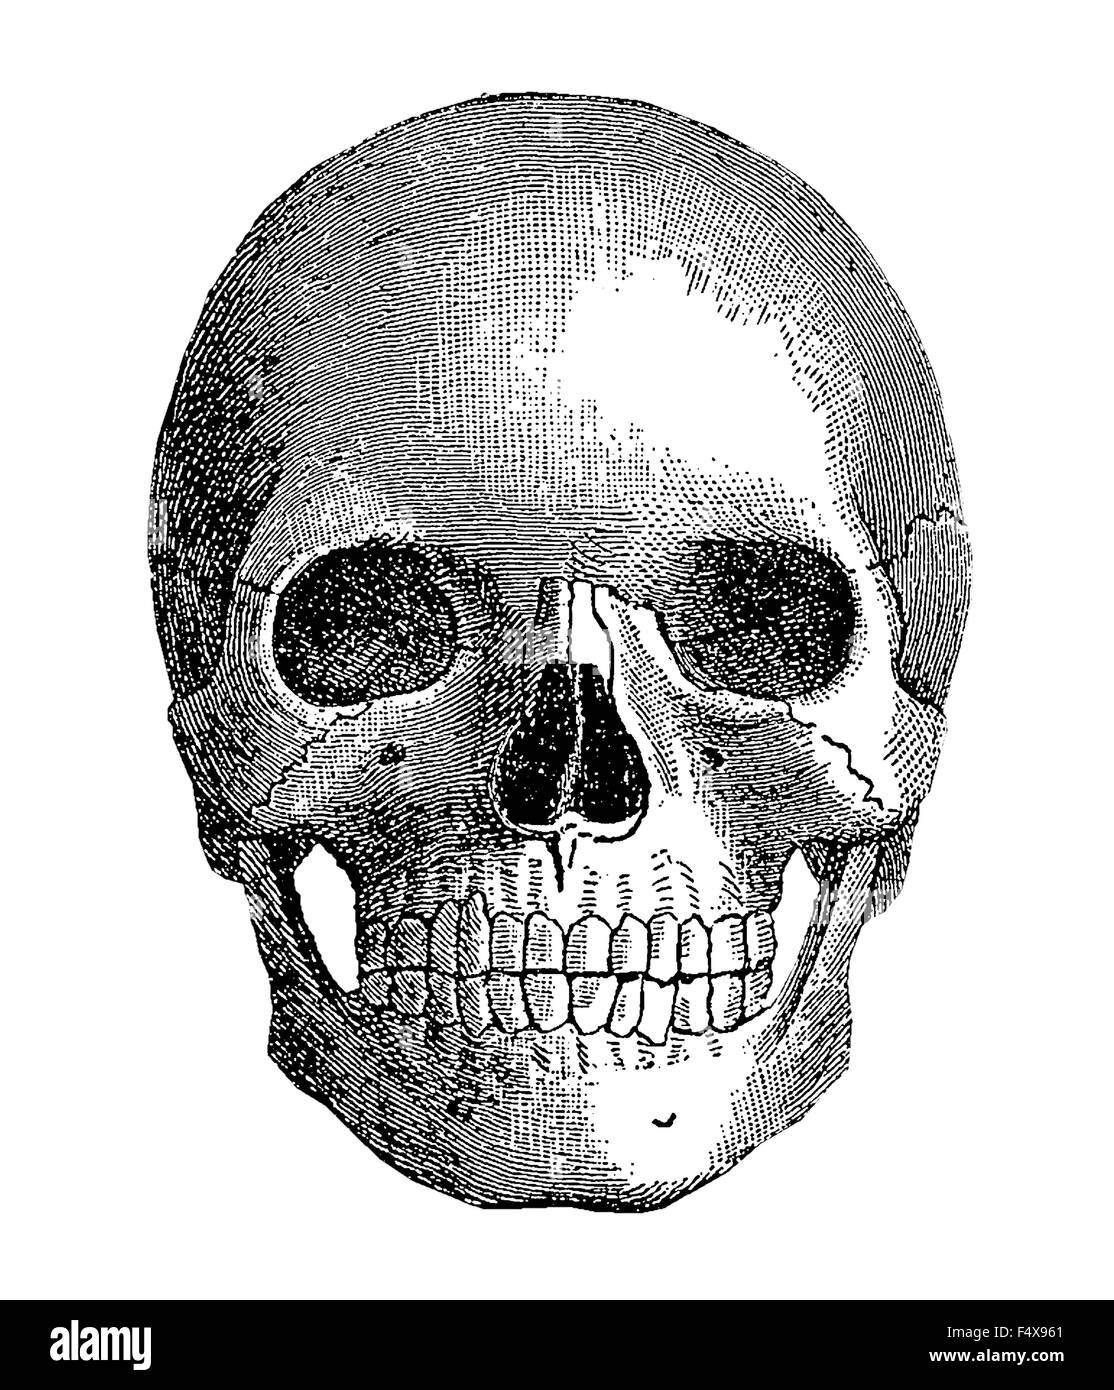 Anatomie - crâne humain, gravure d'époque Banque D'Images